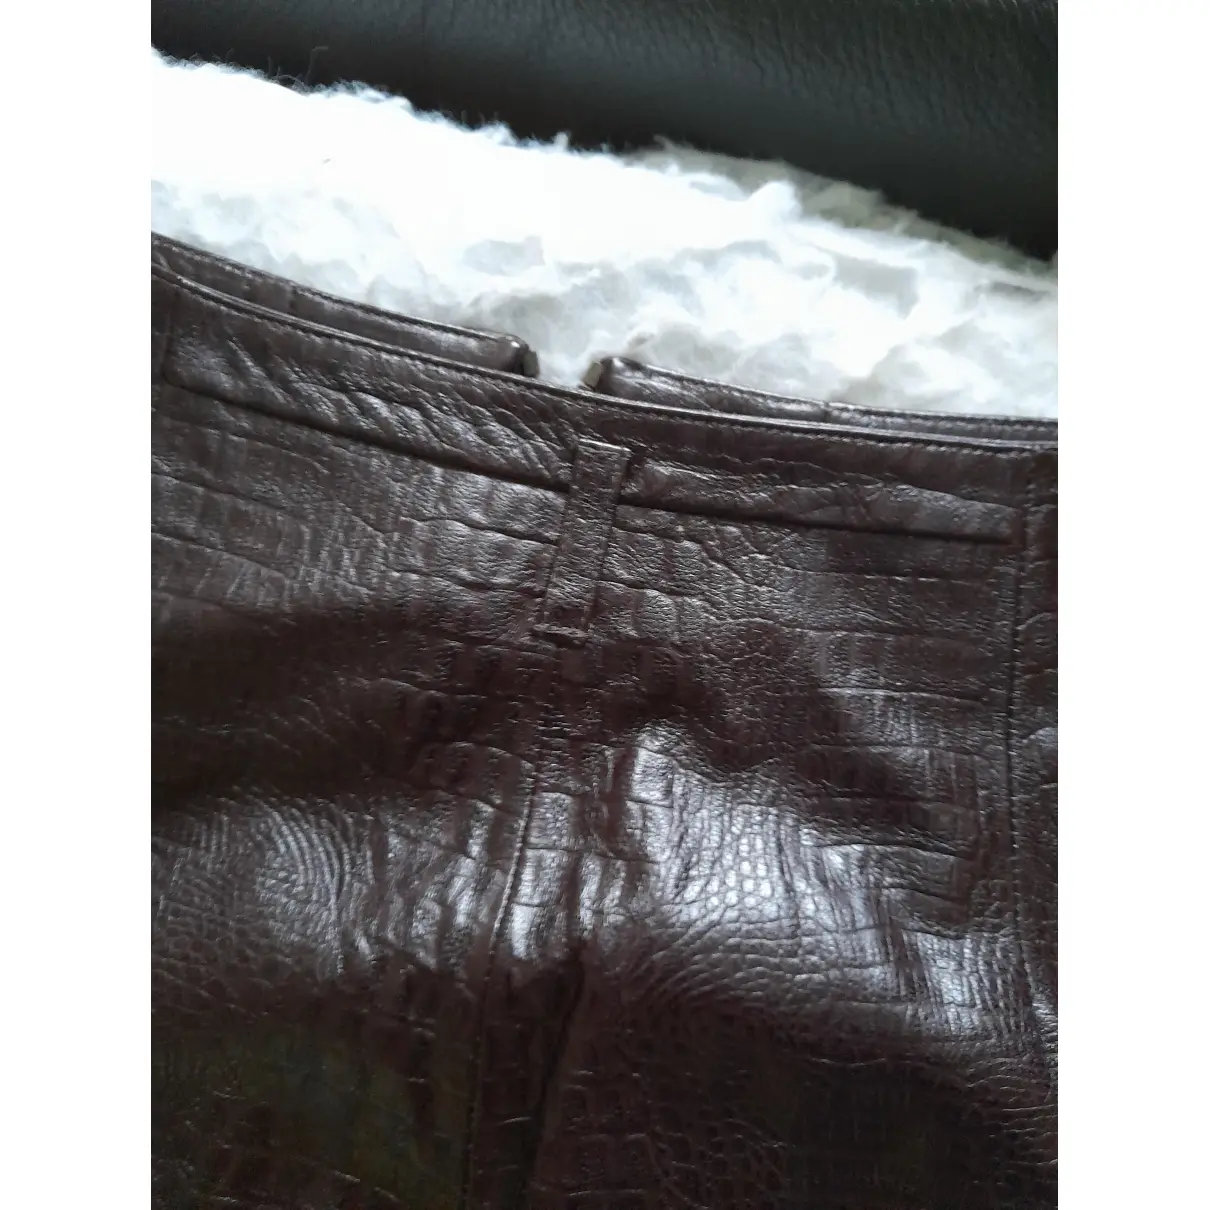 Leather skirt Kenzo - Vintage